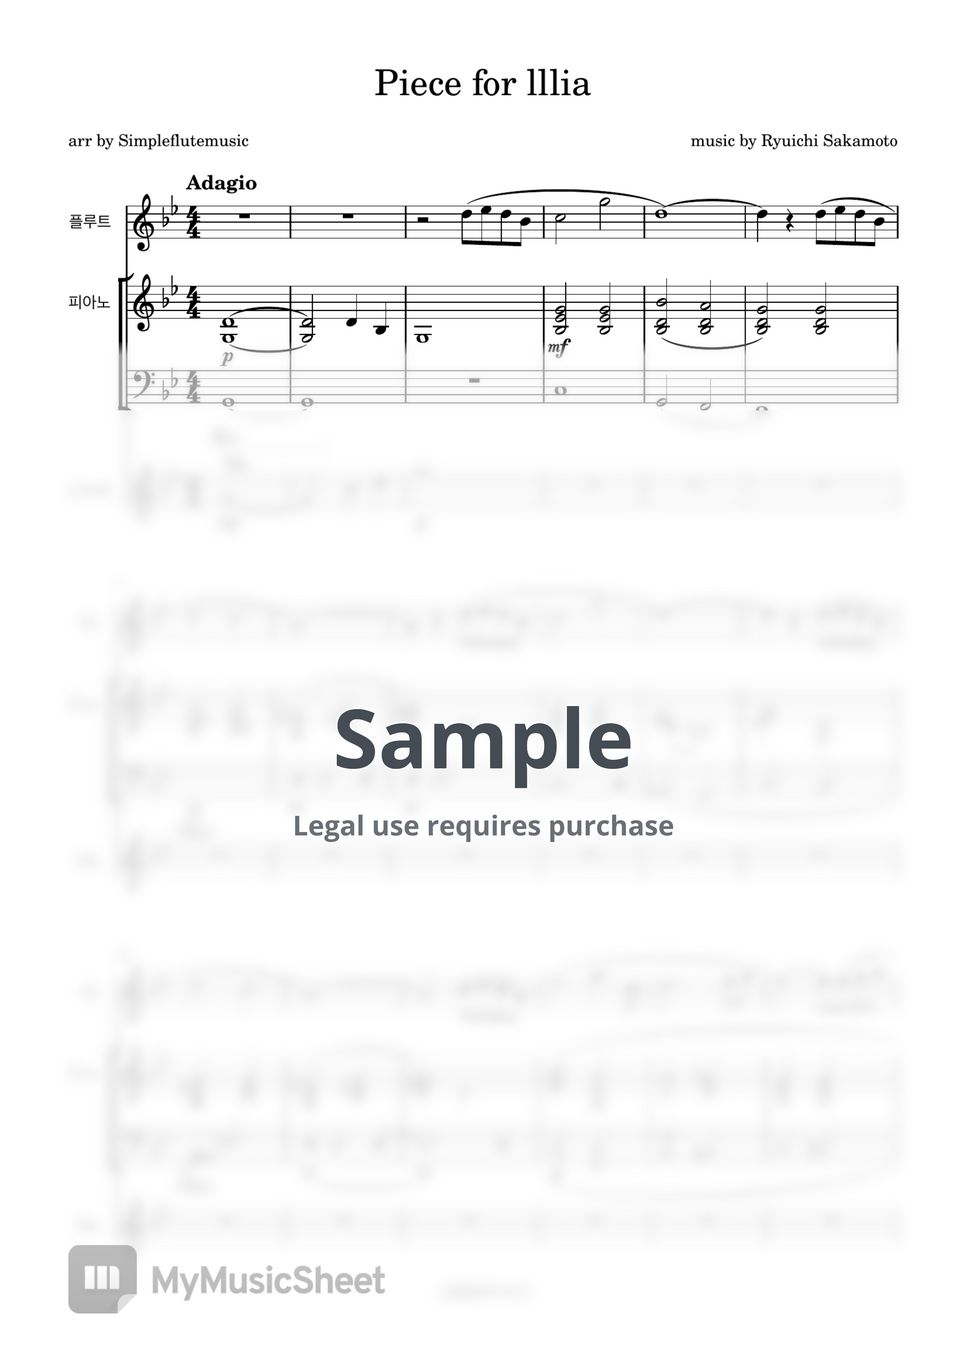 류이치 사카모토 - Piece for Illia (Flute/Piano/MR) by 심플플루트뮤직